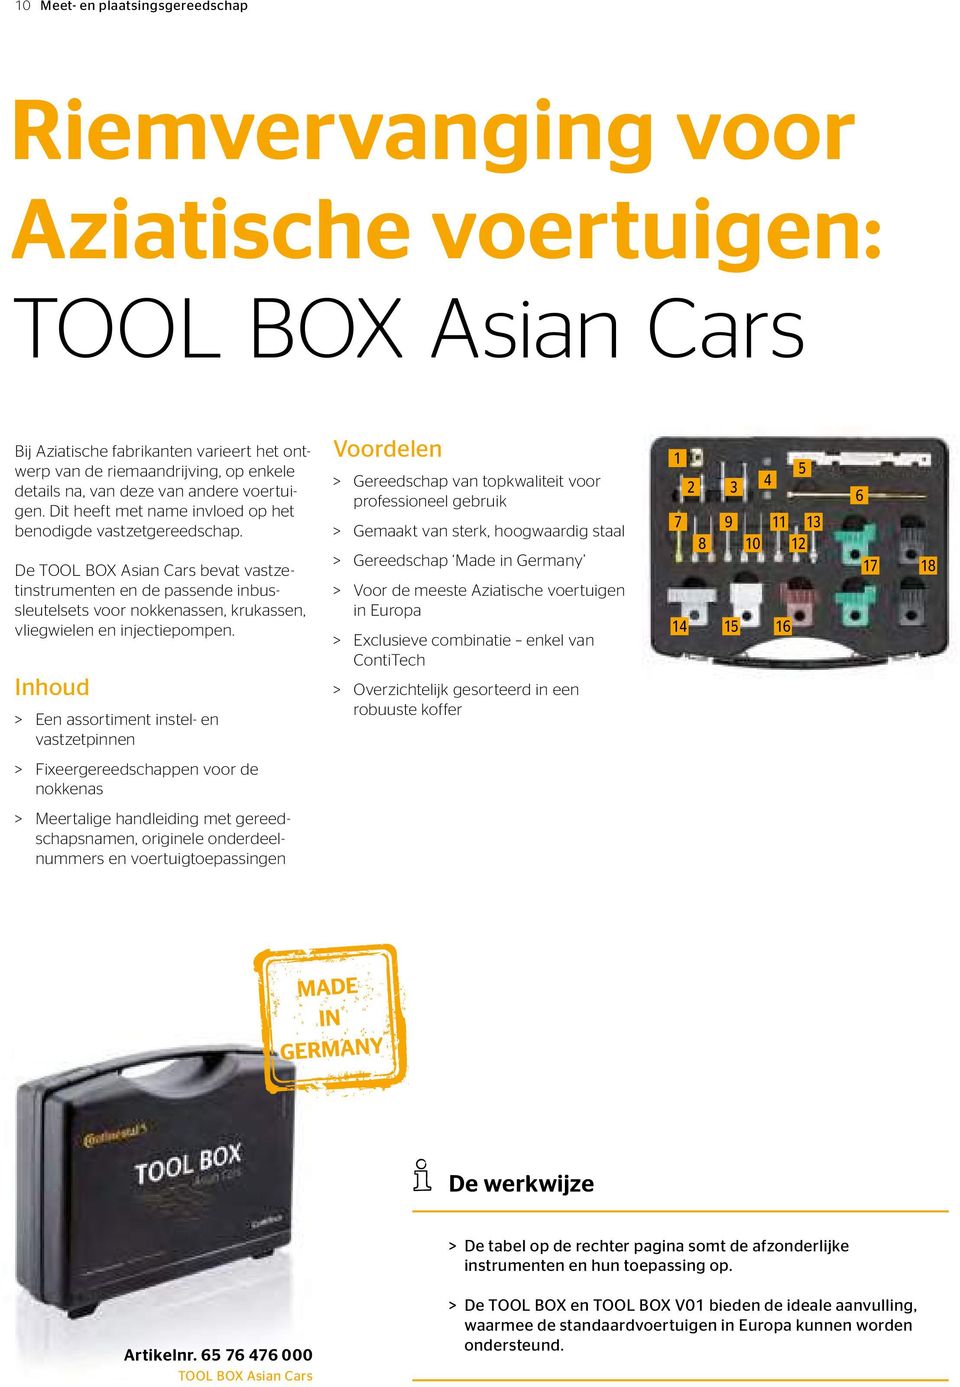 De TOOL BOX Asian Cars bevat vastzetinstrumenten en de passende inbussleutelsets voor nokkenassen, krukassen, vliegwielen en injectiepompen.